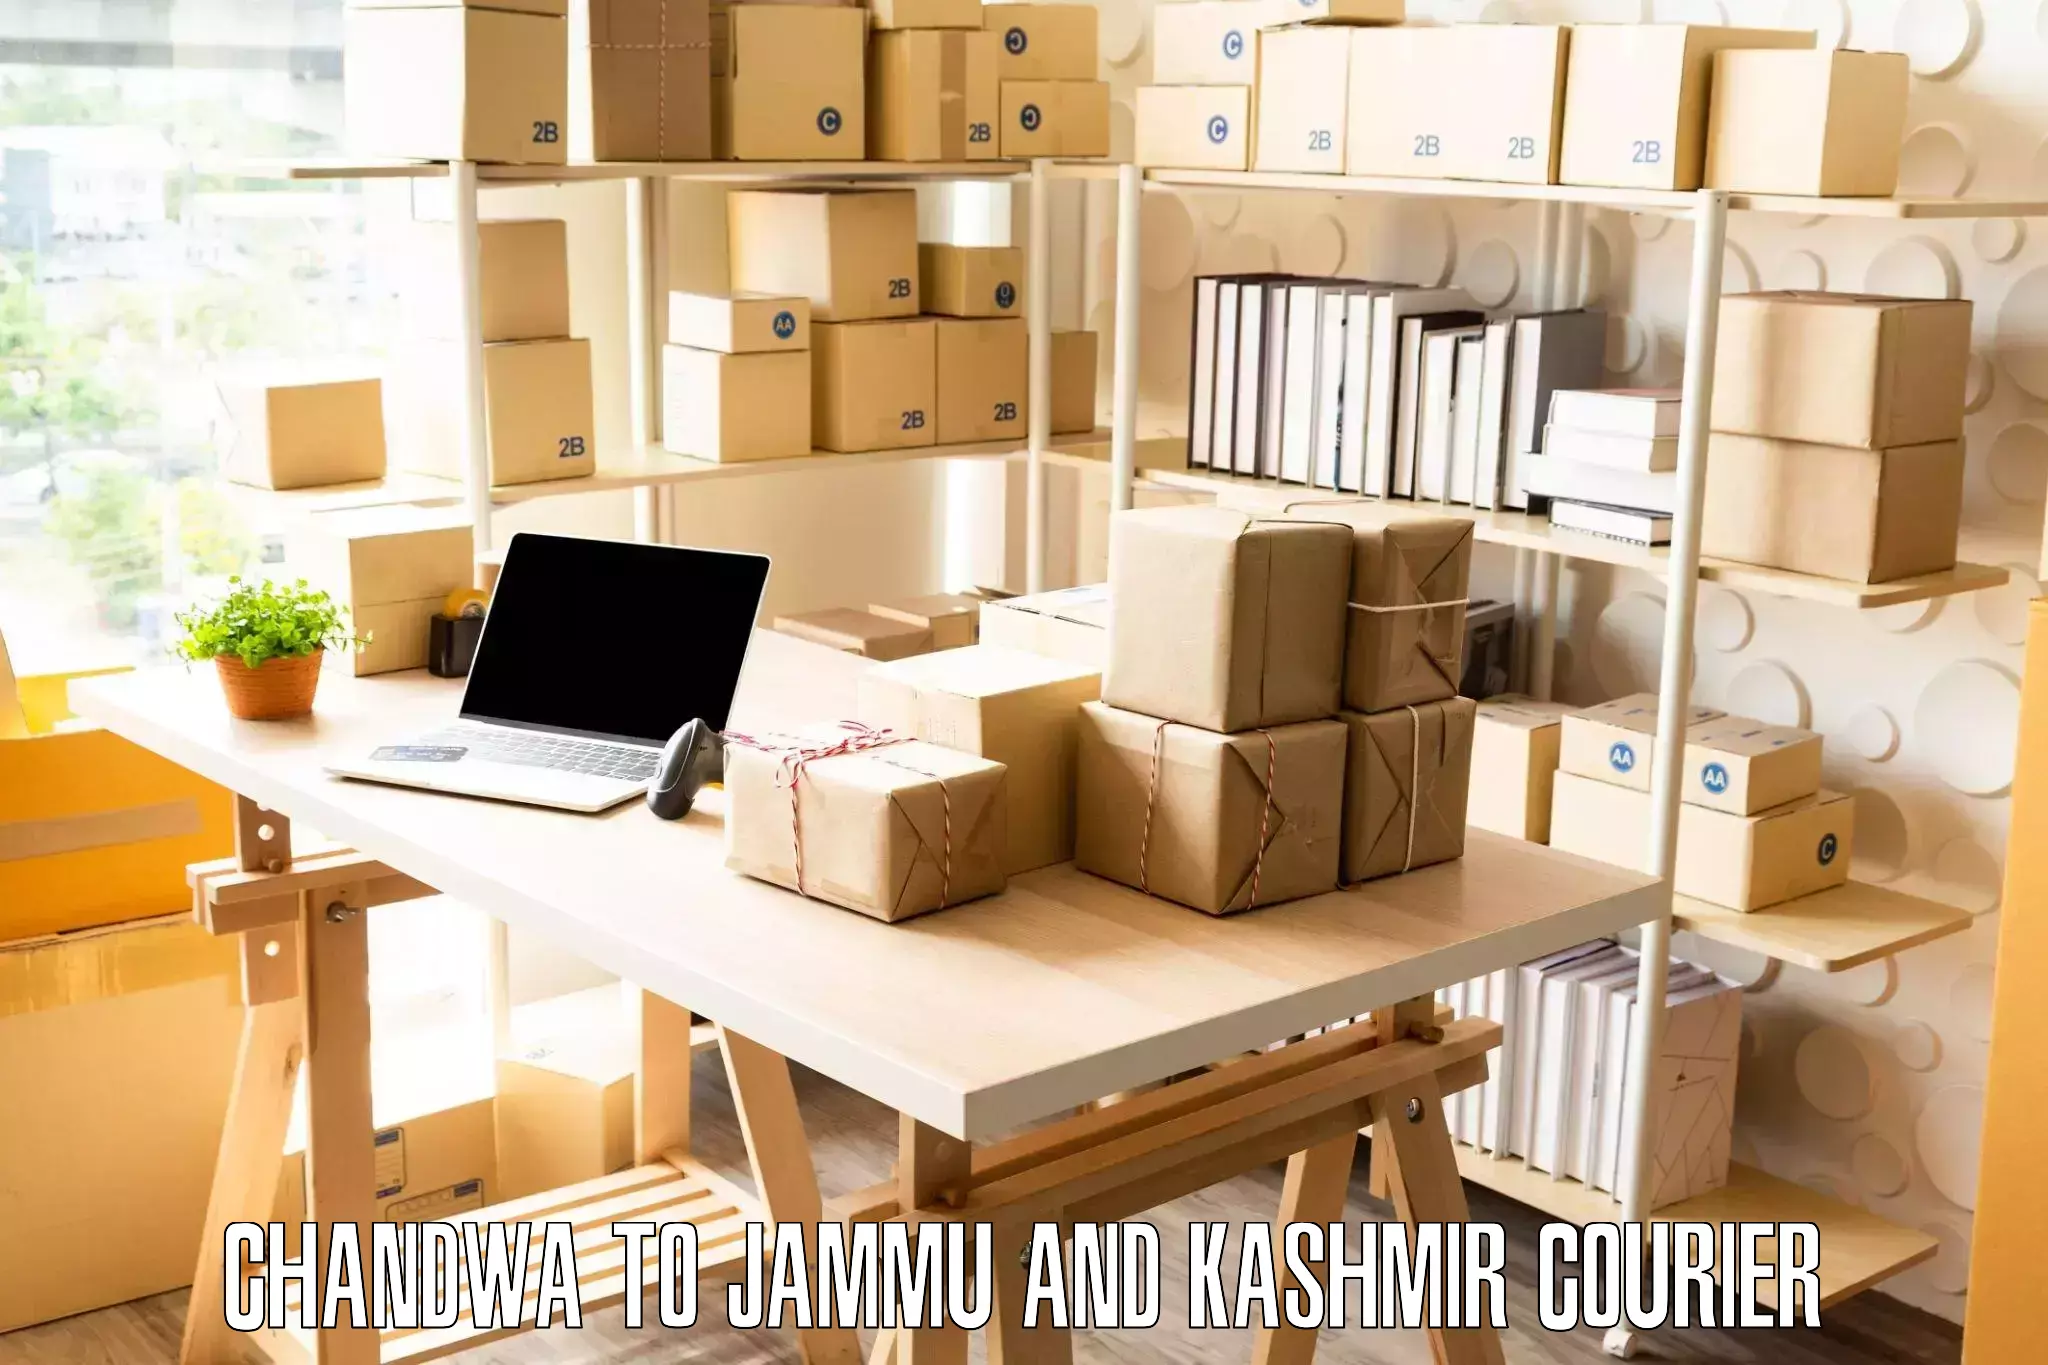 Furniture moving experts Chandwa to Kishtwar